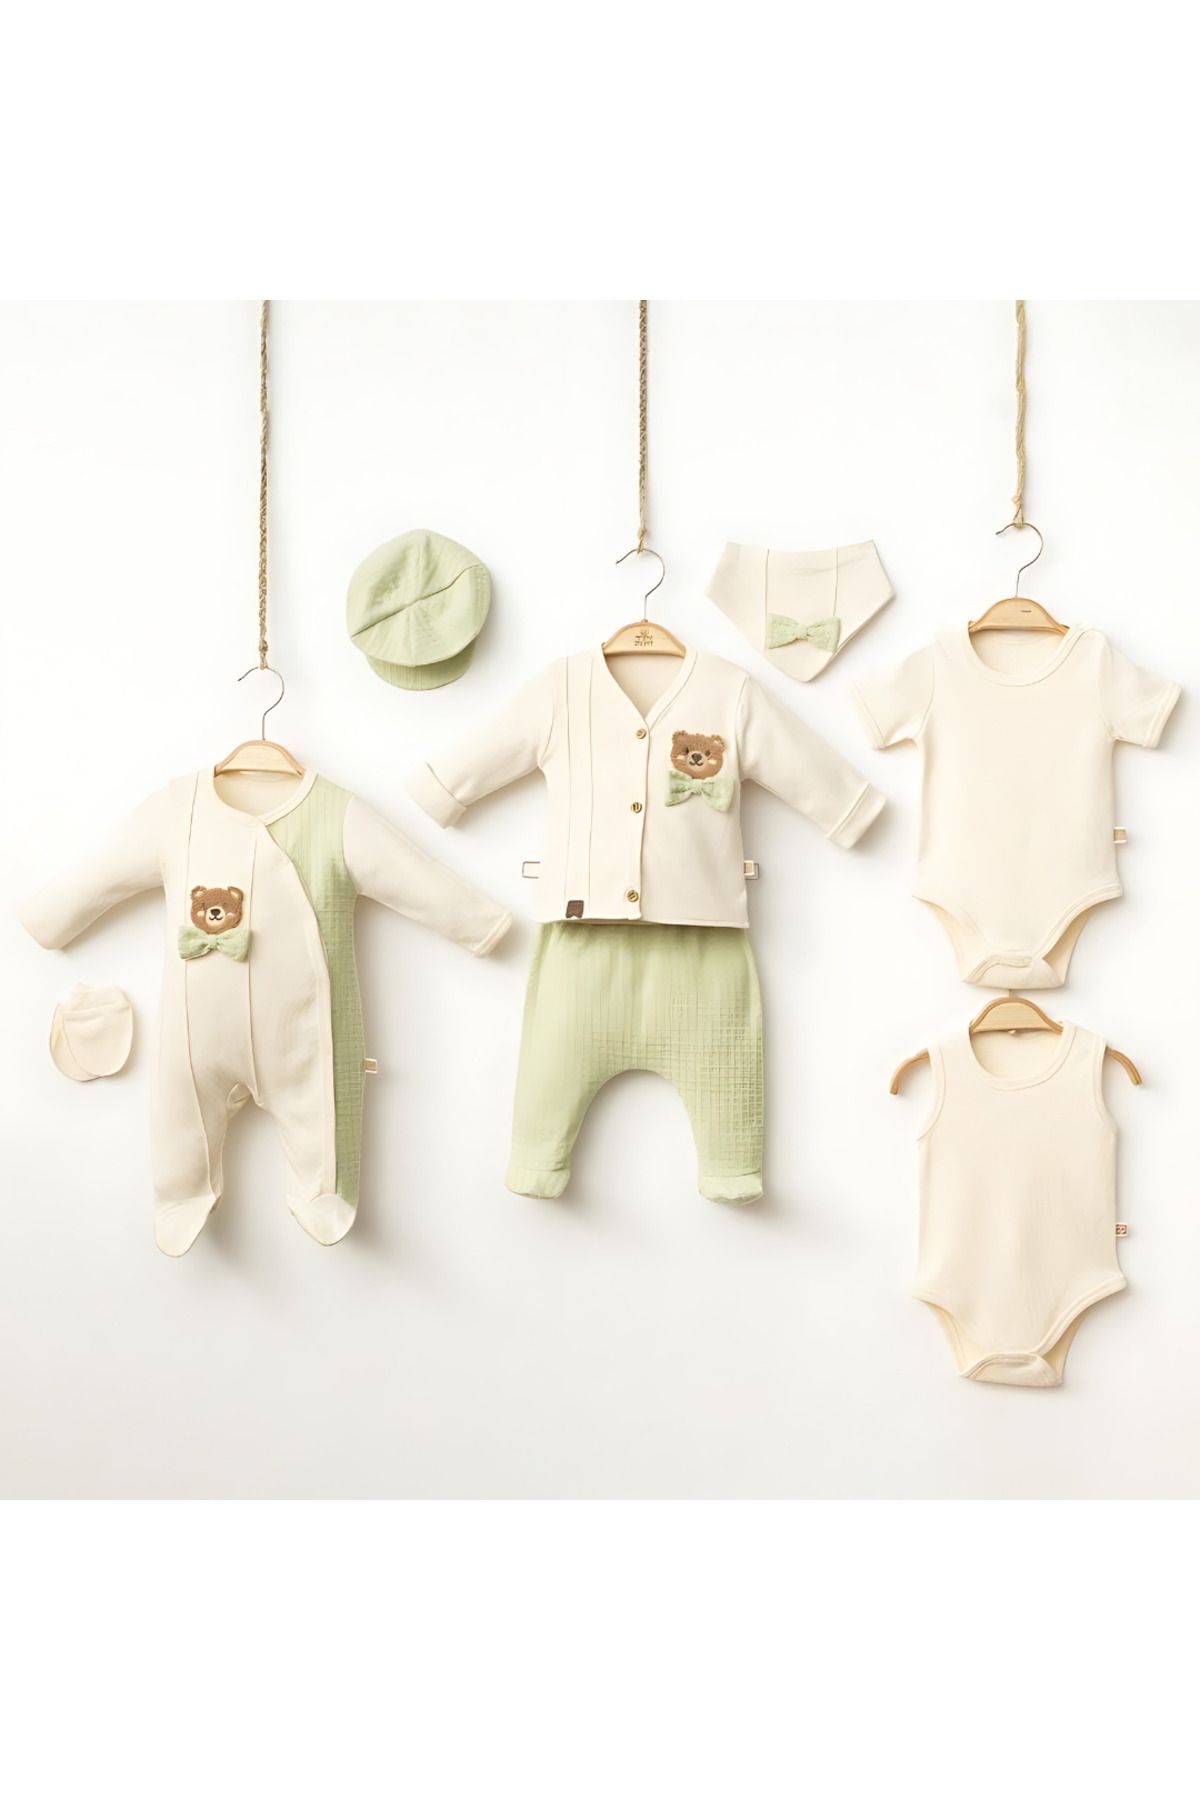 Rise Raba Erkek Bebek Hastane Çıkışı 8'Li %100 Pamuklu Set 0-3 Aylık